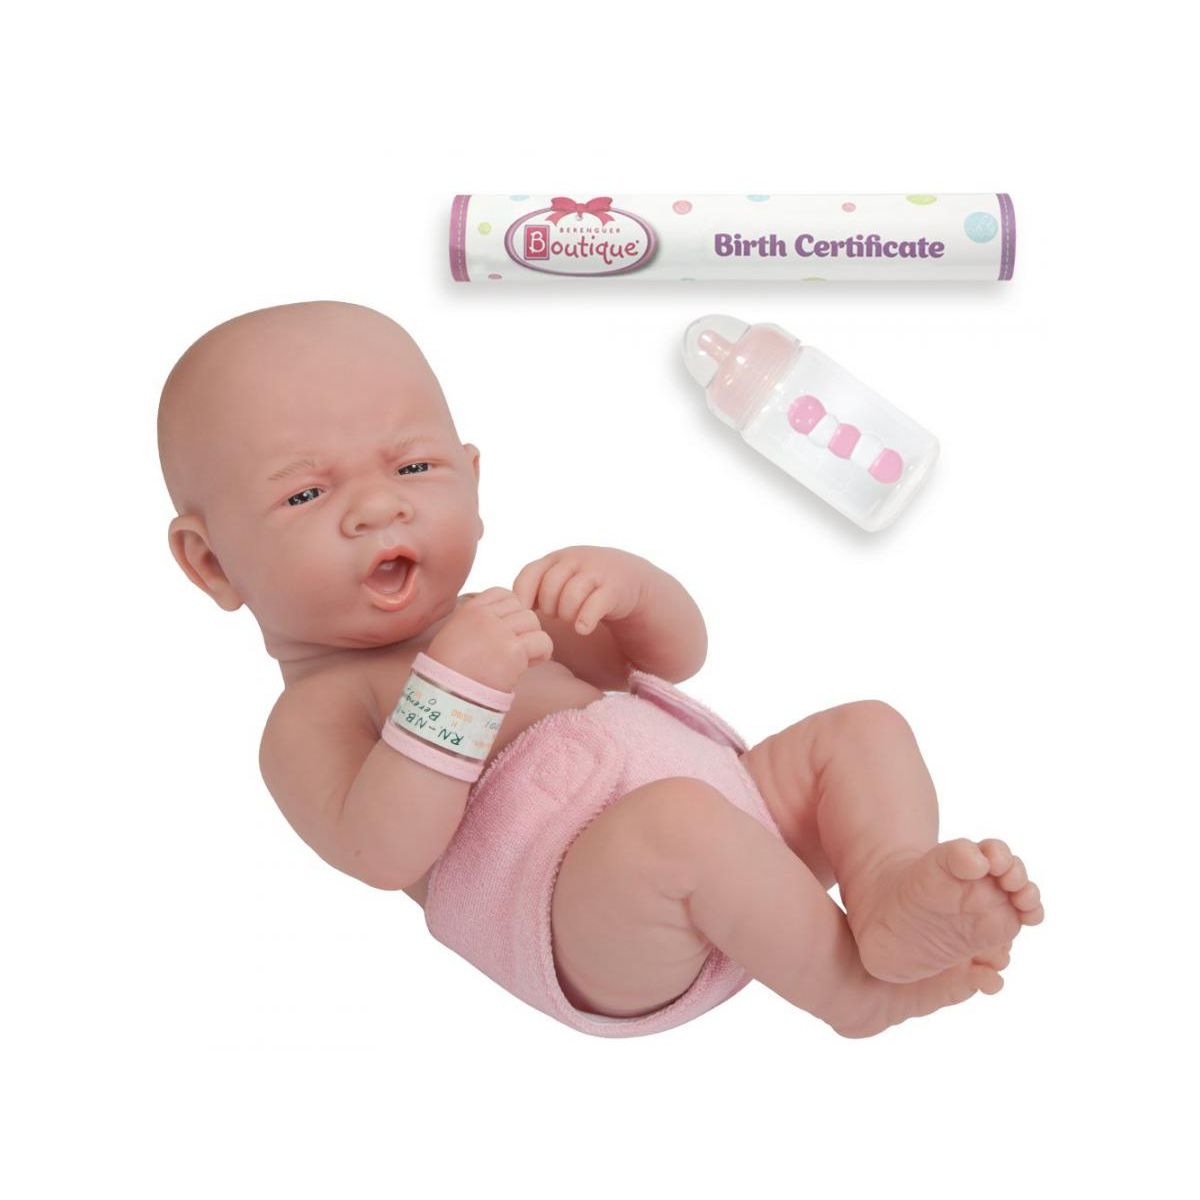 New Born Baby - Bain rose pour bébé et accessoires - Poupées